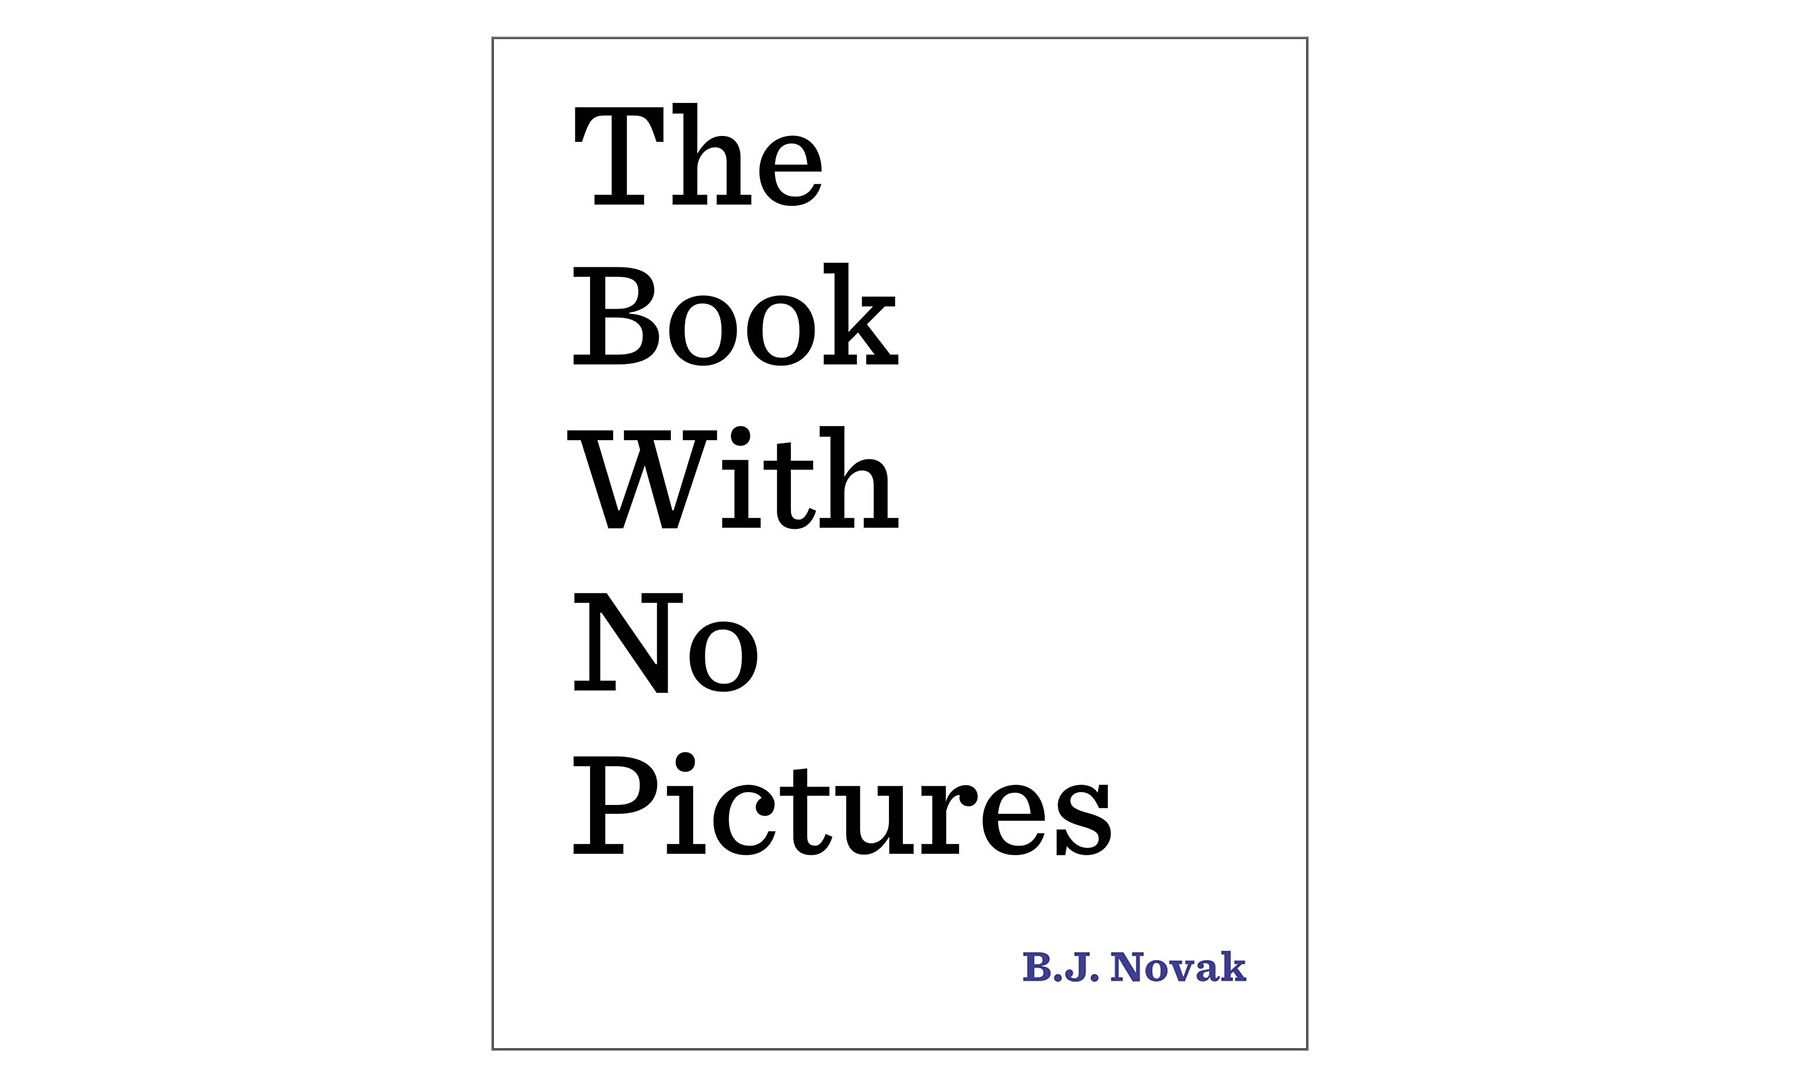 O livro sem imagens, de B.J. Novak